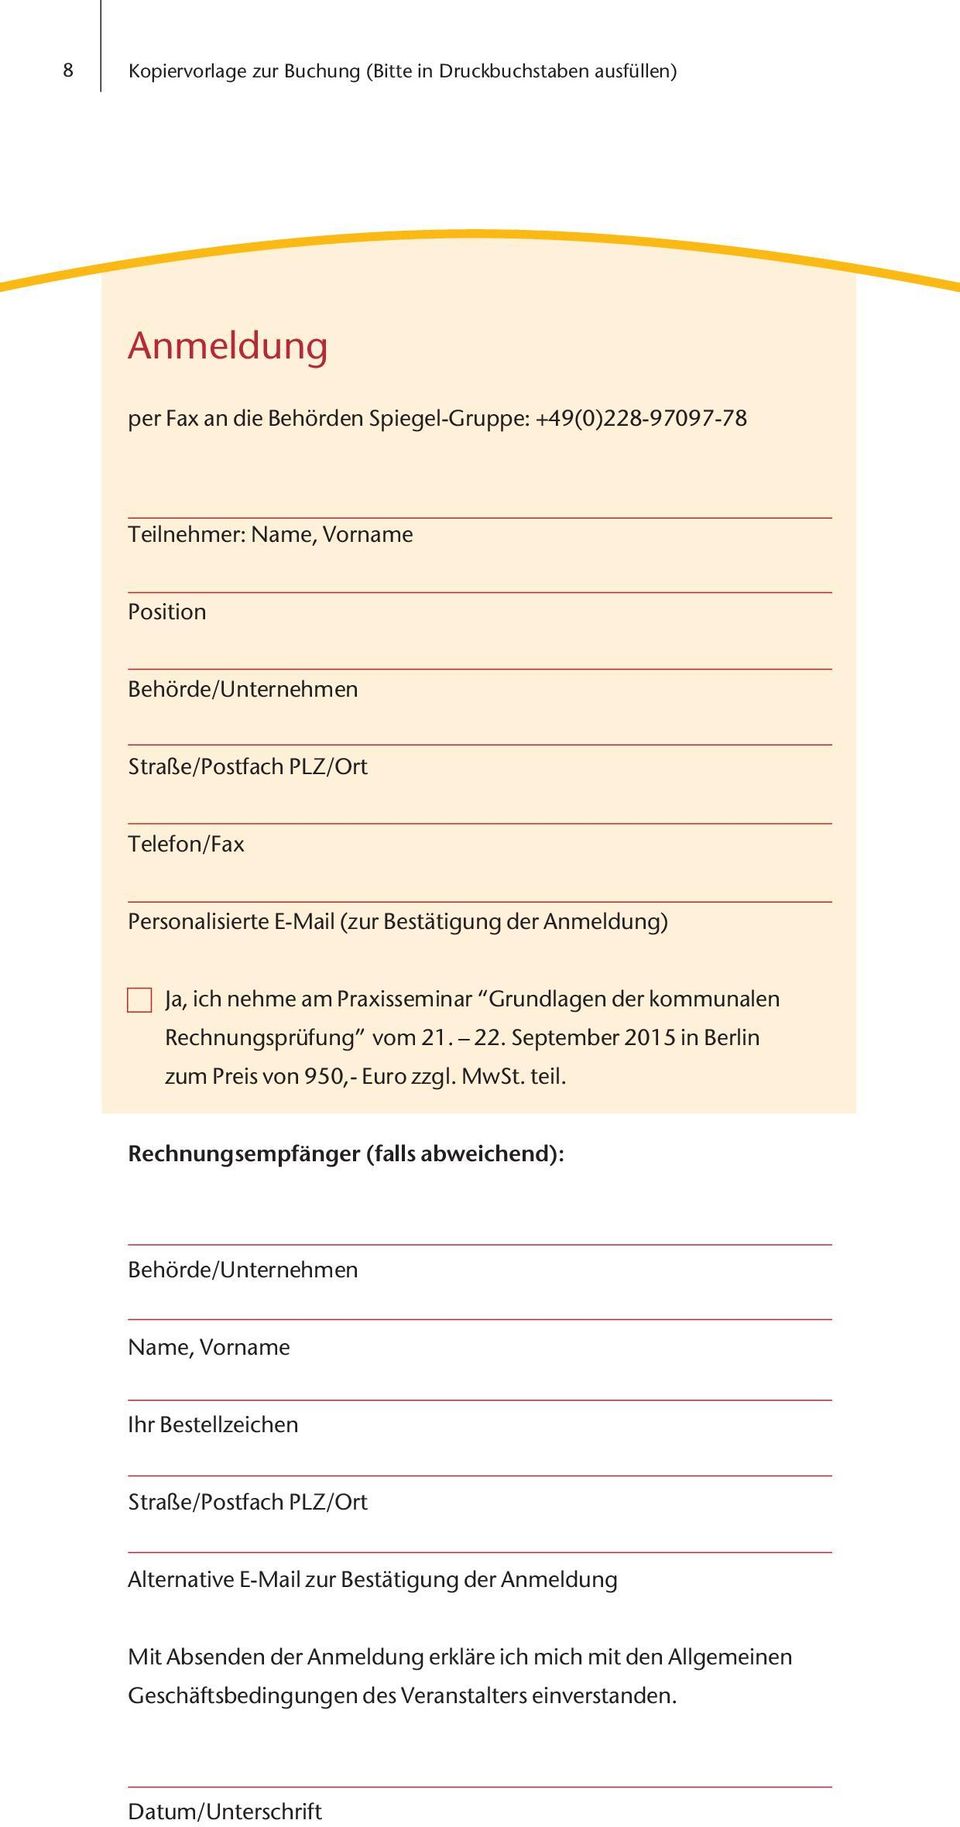 Rechnungsprüfung vom 21. 22. September 2015 in Berlin zum Preis von 950,- Euro zzgl. MwSt. teil.